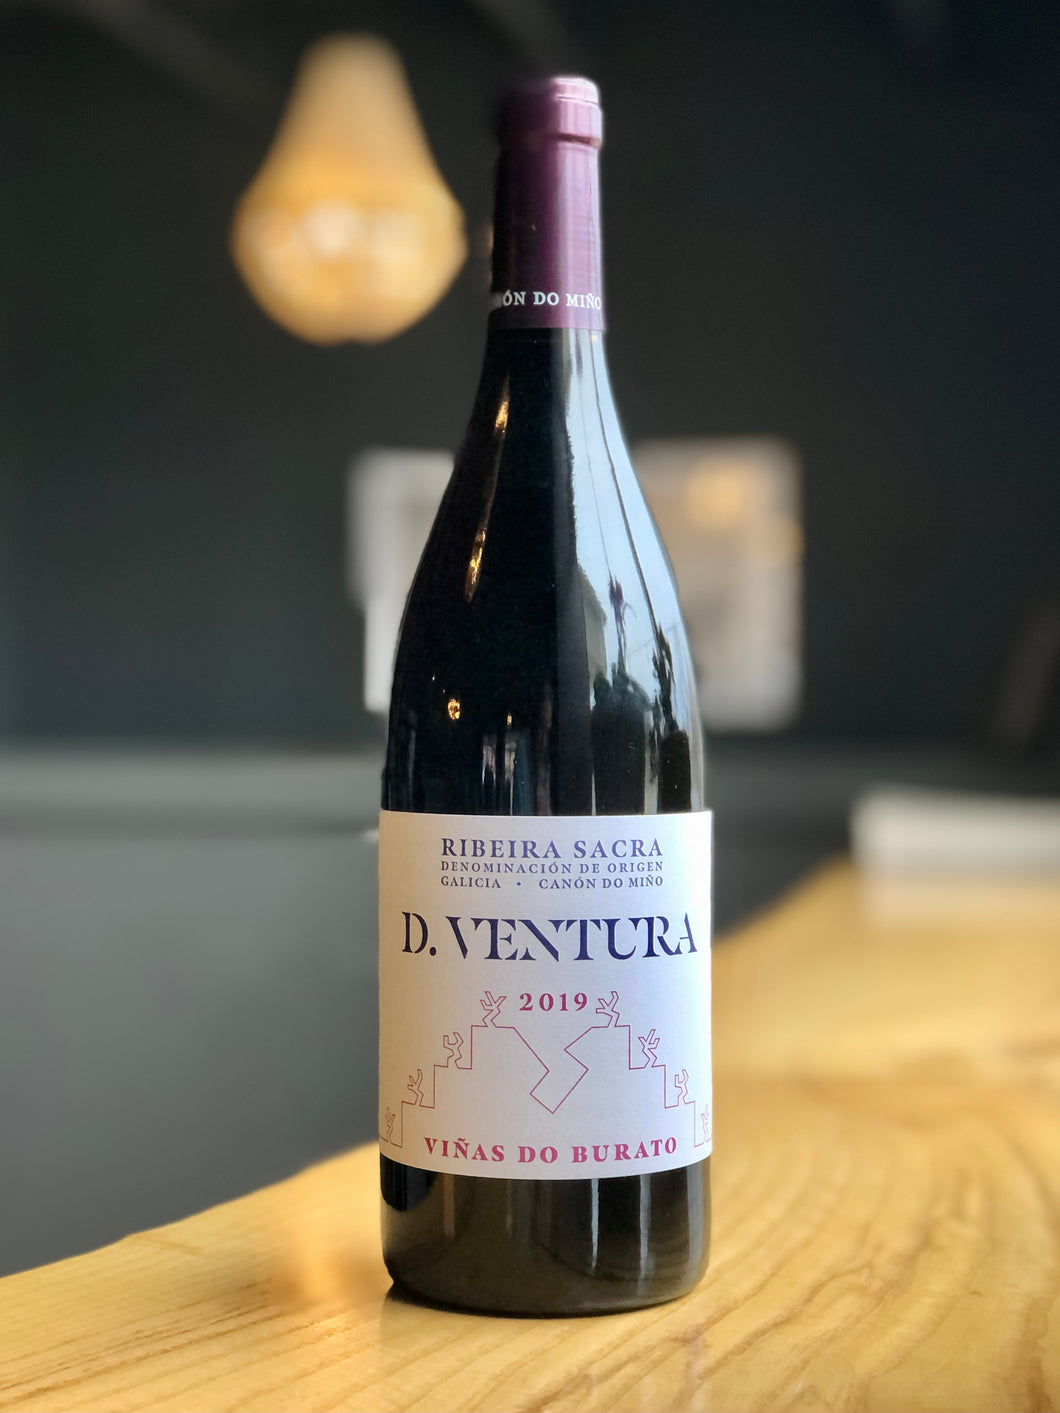 D. Ventura “Viñas do Burato